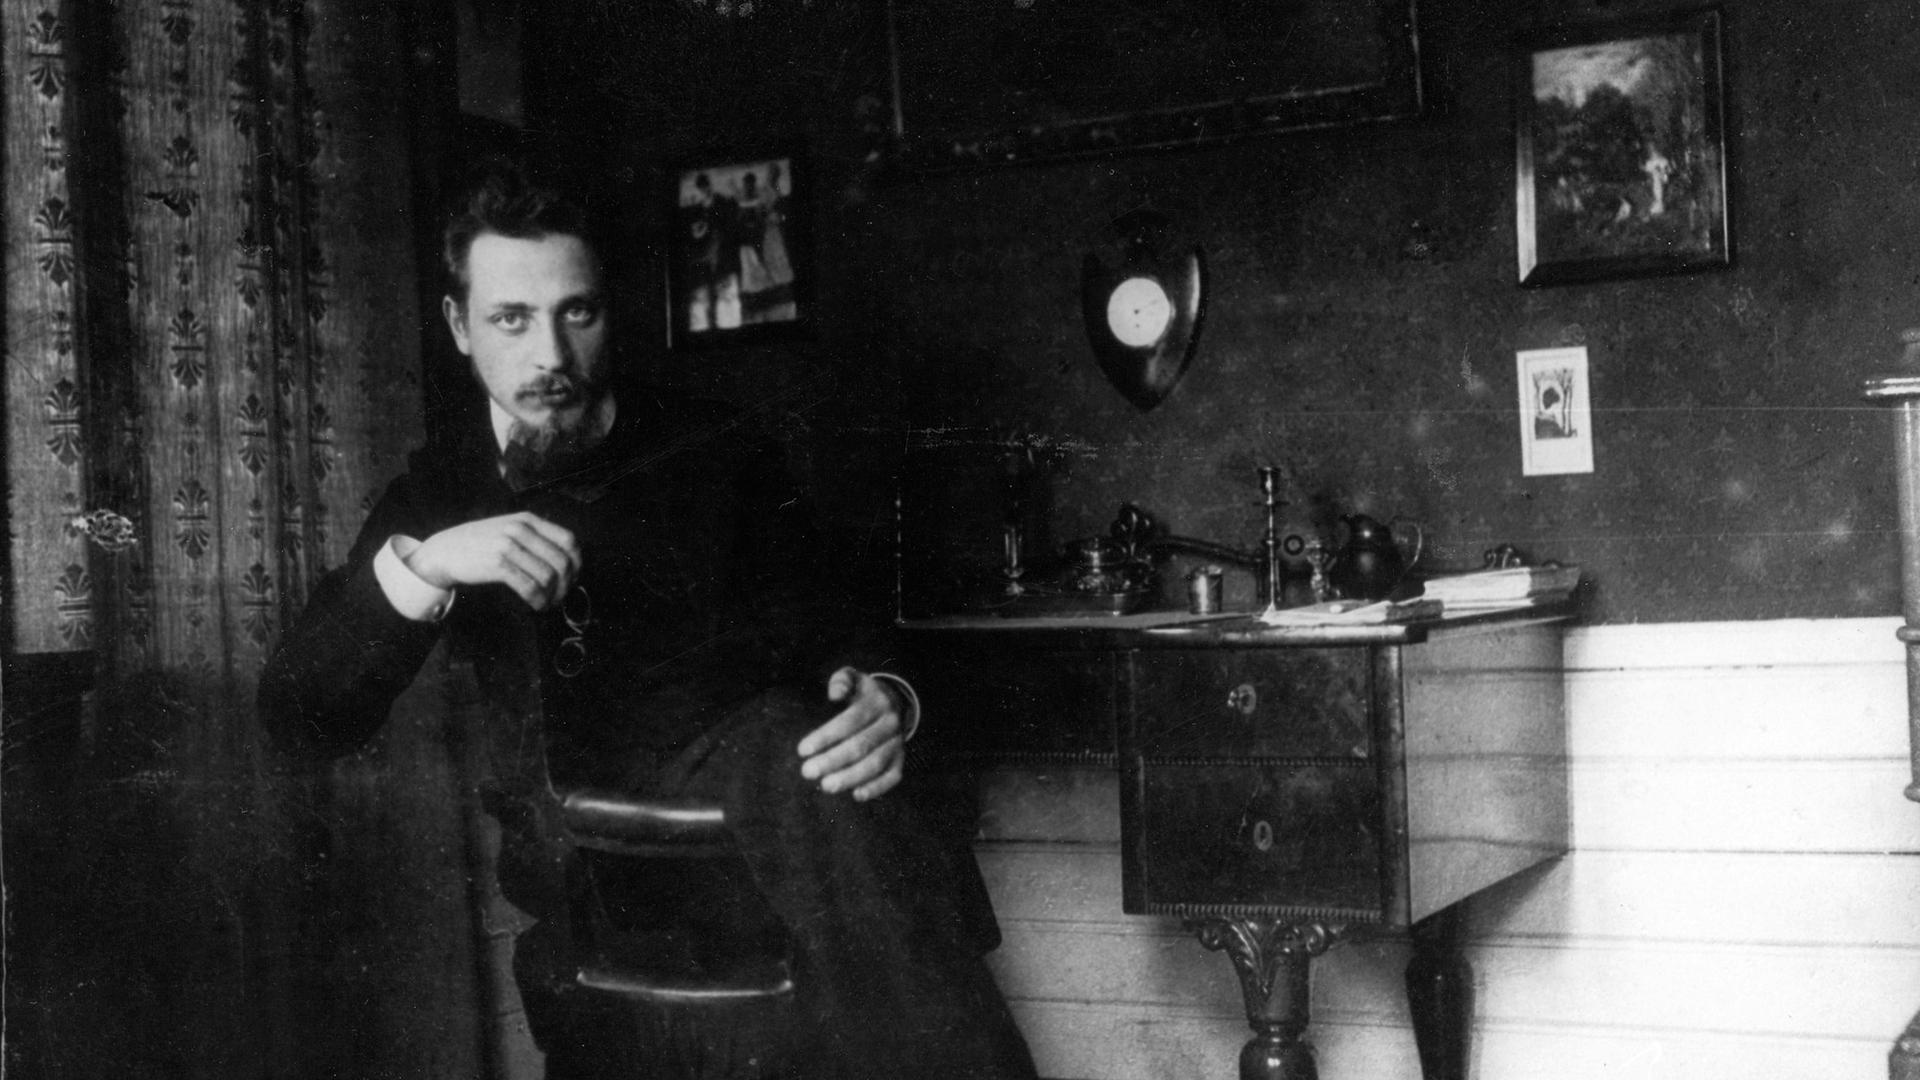 Der Dichter Rainer Maria Rilke sitzt um 1905 auf einem Stuhl in einem Zimmer.